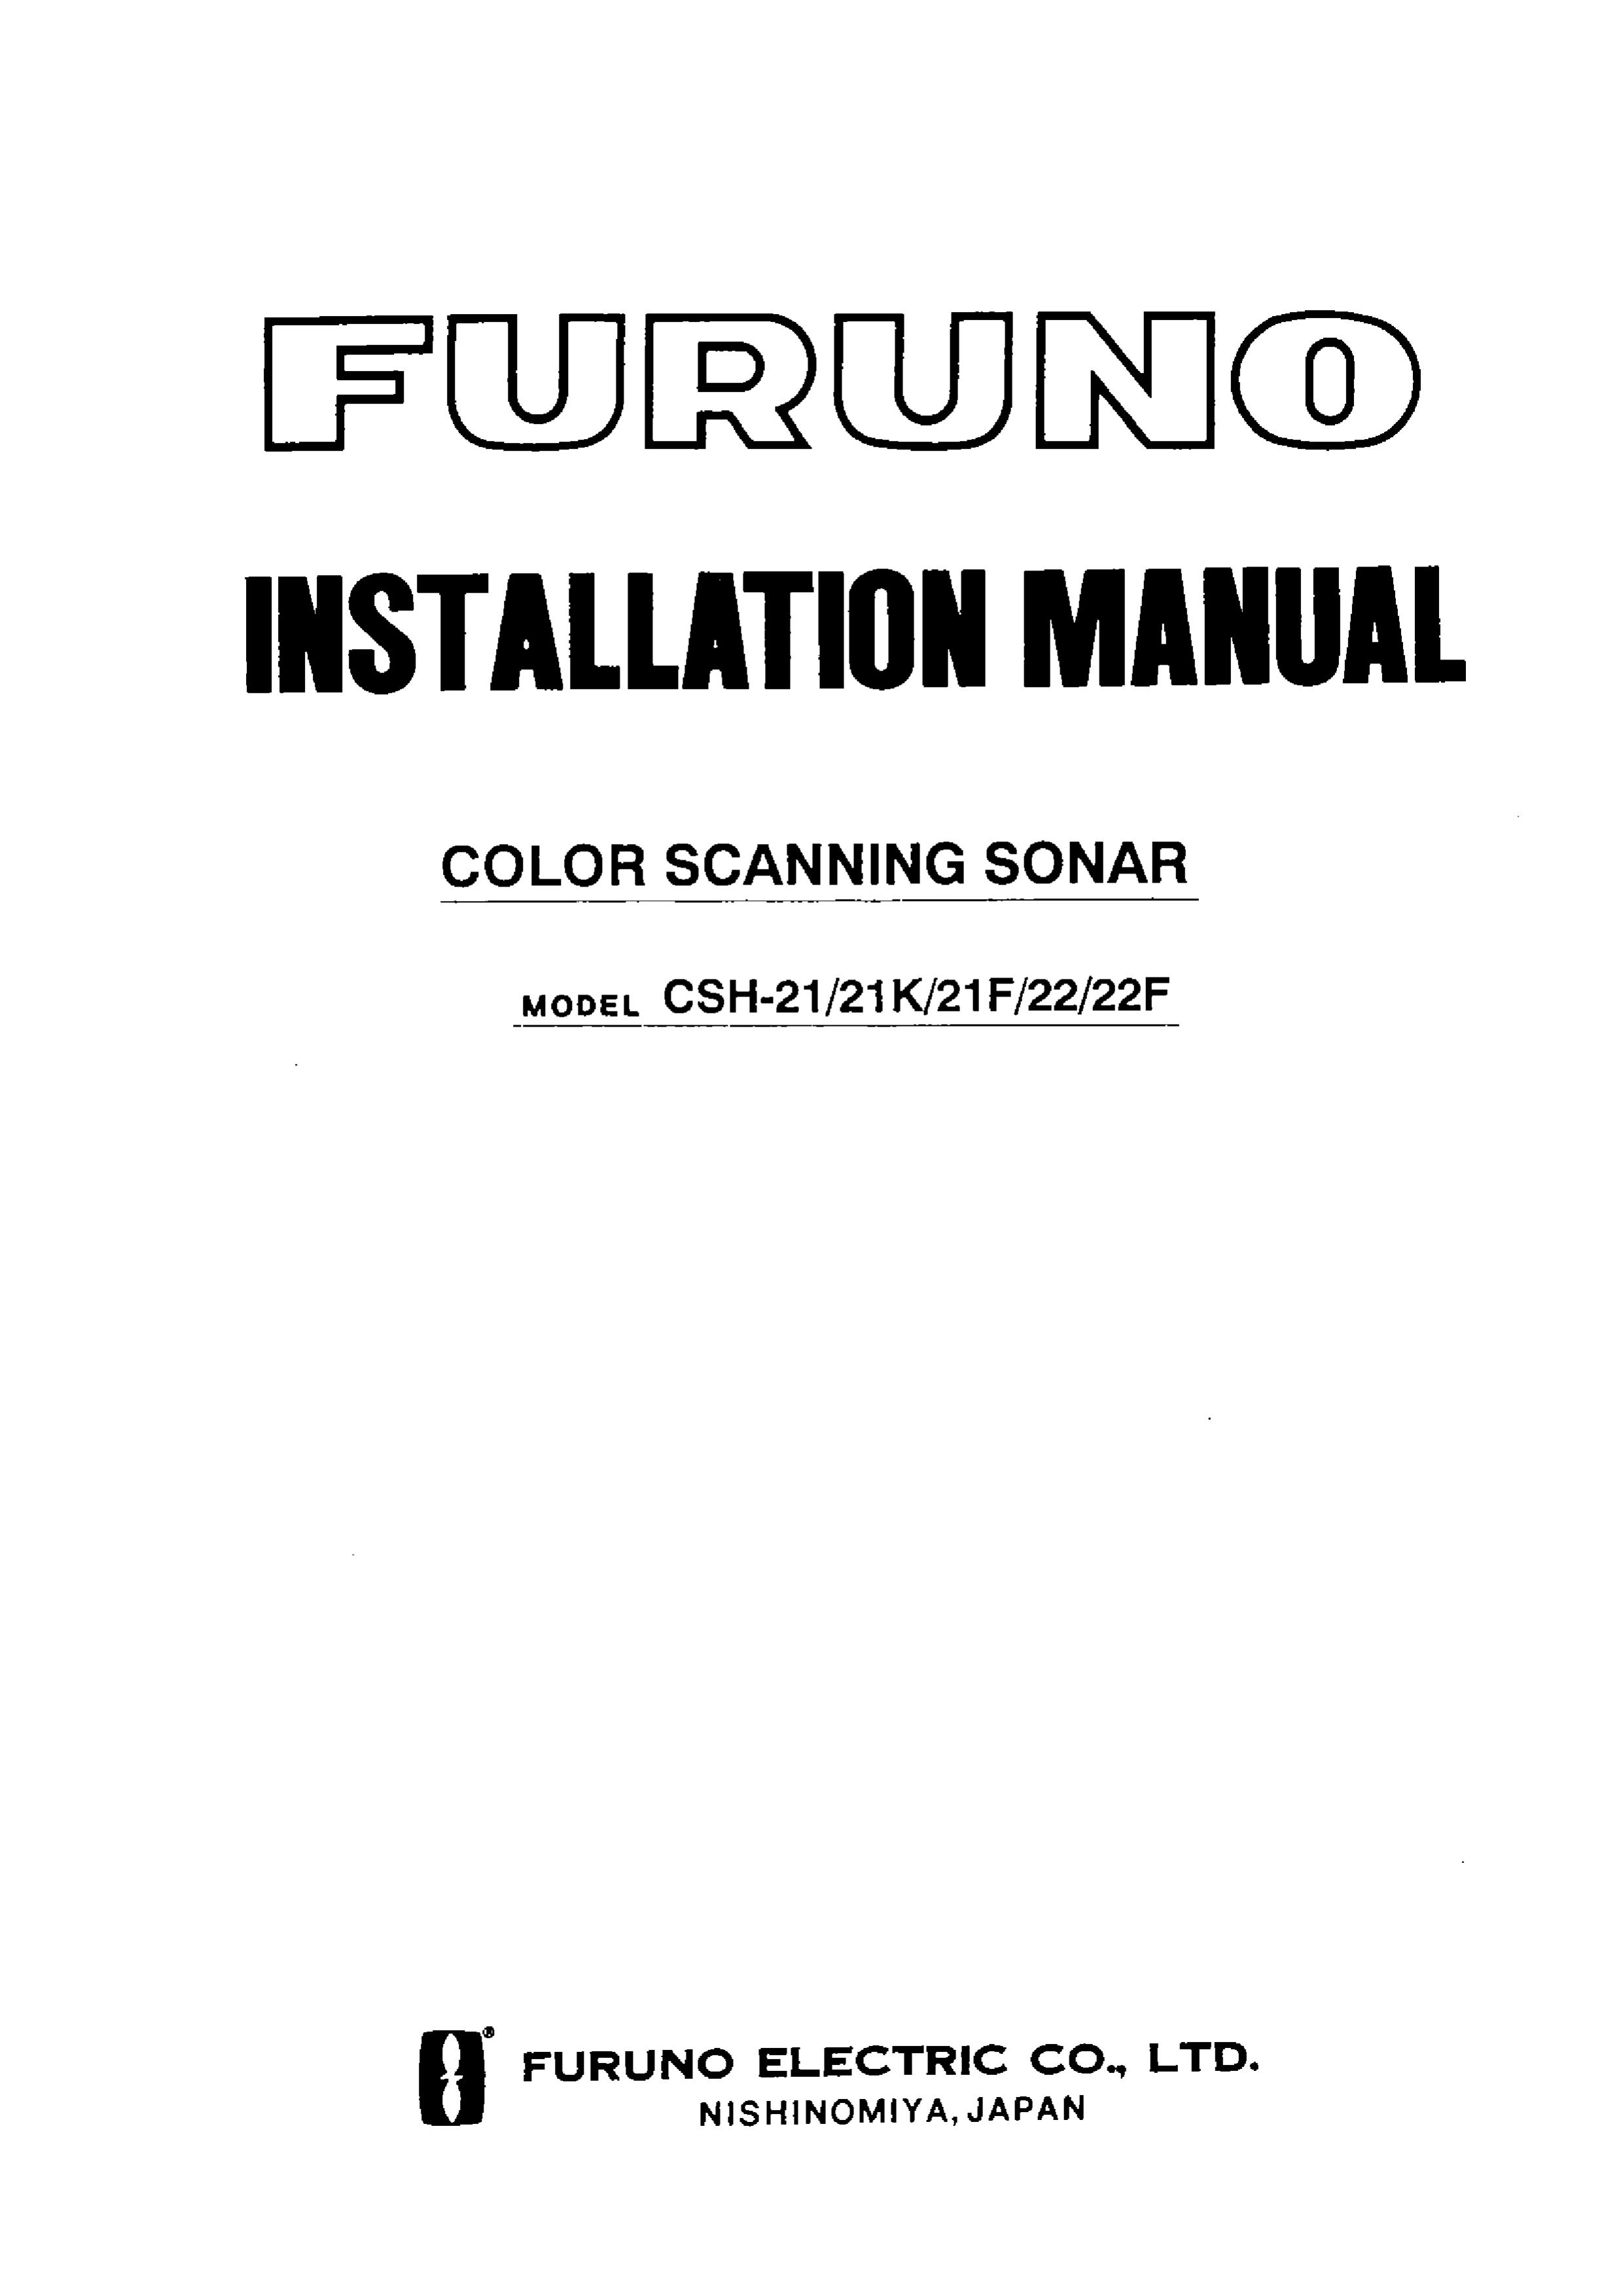 Furuno CSH-21F SONAR User Manual